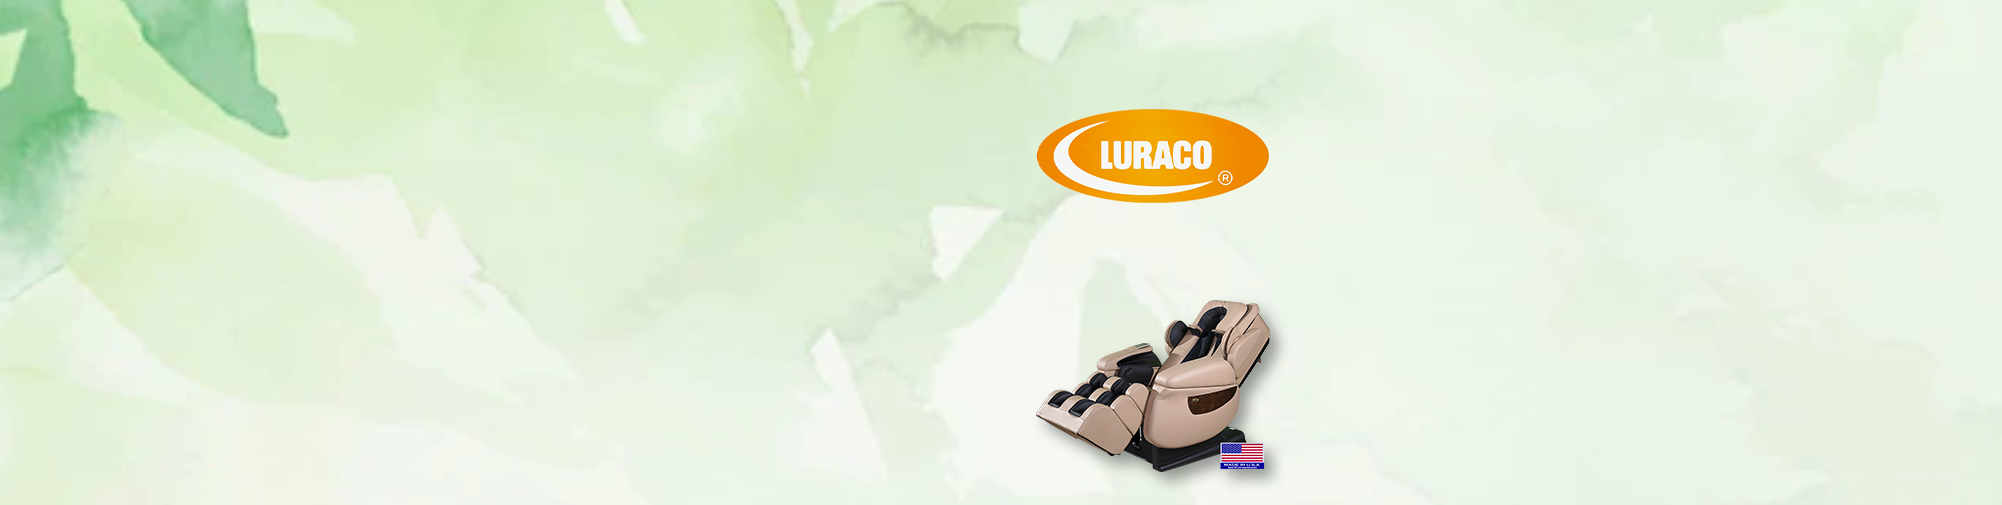 Luraco Technologies в мире кресел для здоровья | массажных кресел